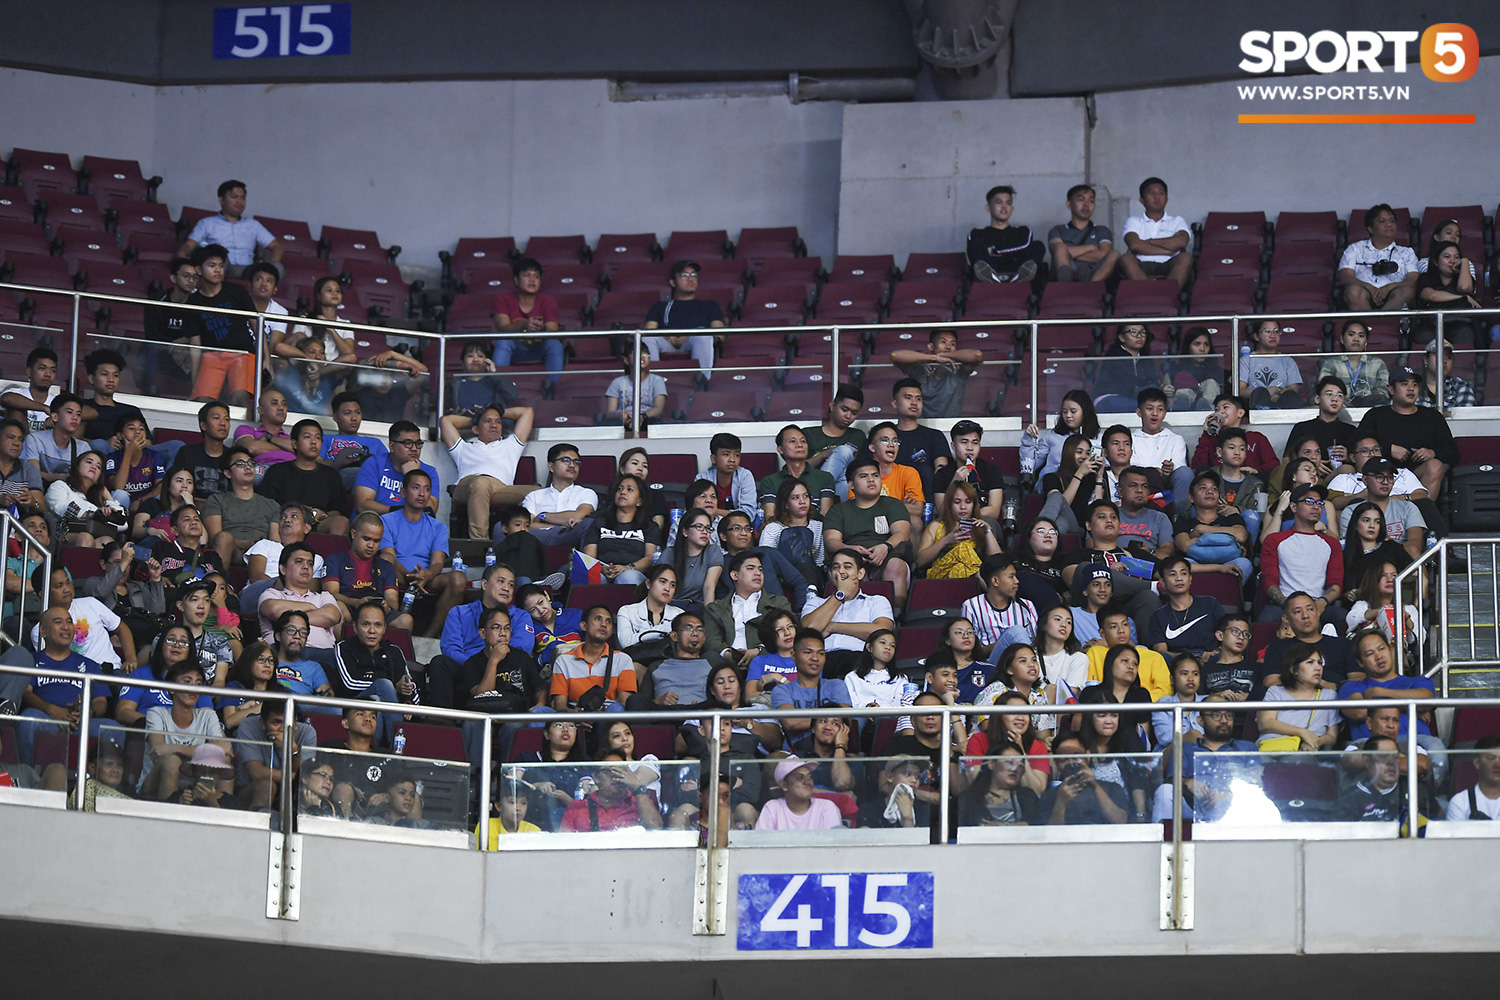 Choáng ngợp trước vẻ hào nhoáng của nhà thi đấu và sức ép từ 15.000 CĐV chủ nhà Philippines mà tuyển bóng rổ Việt Nam phải đối mặt - Ảnh 4.